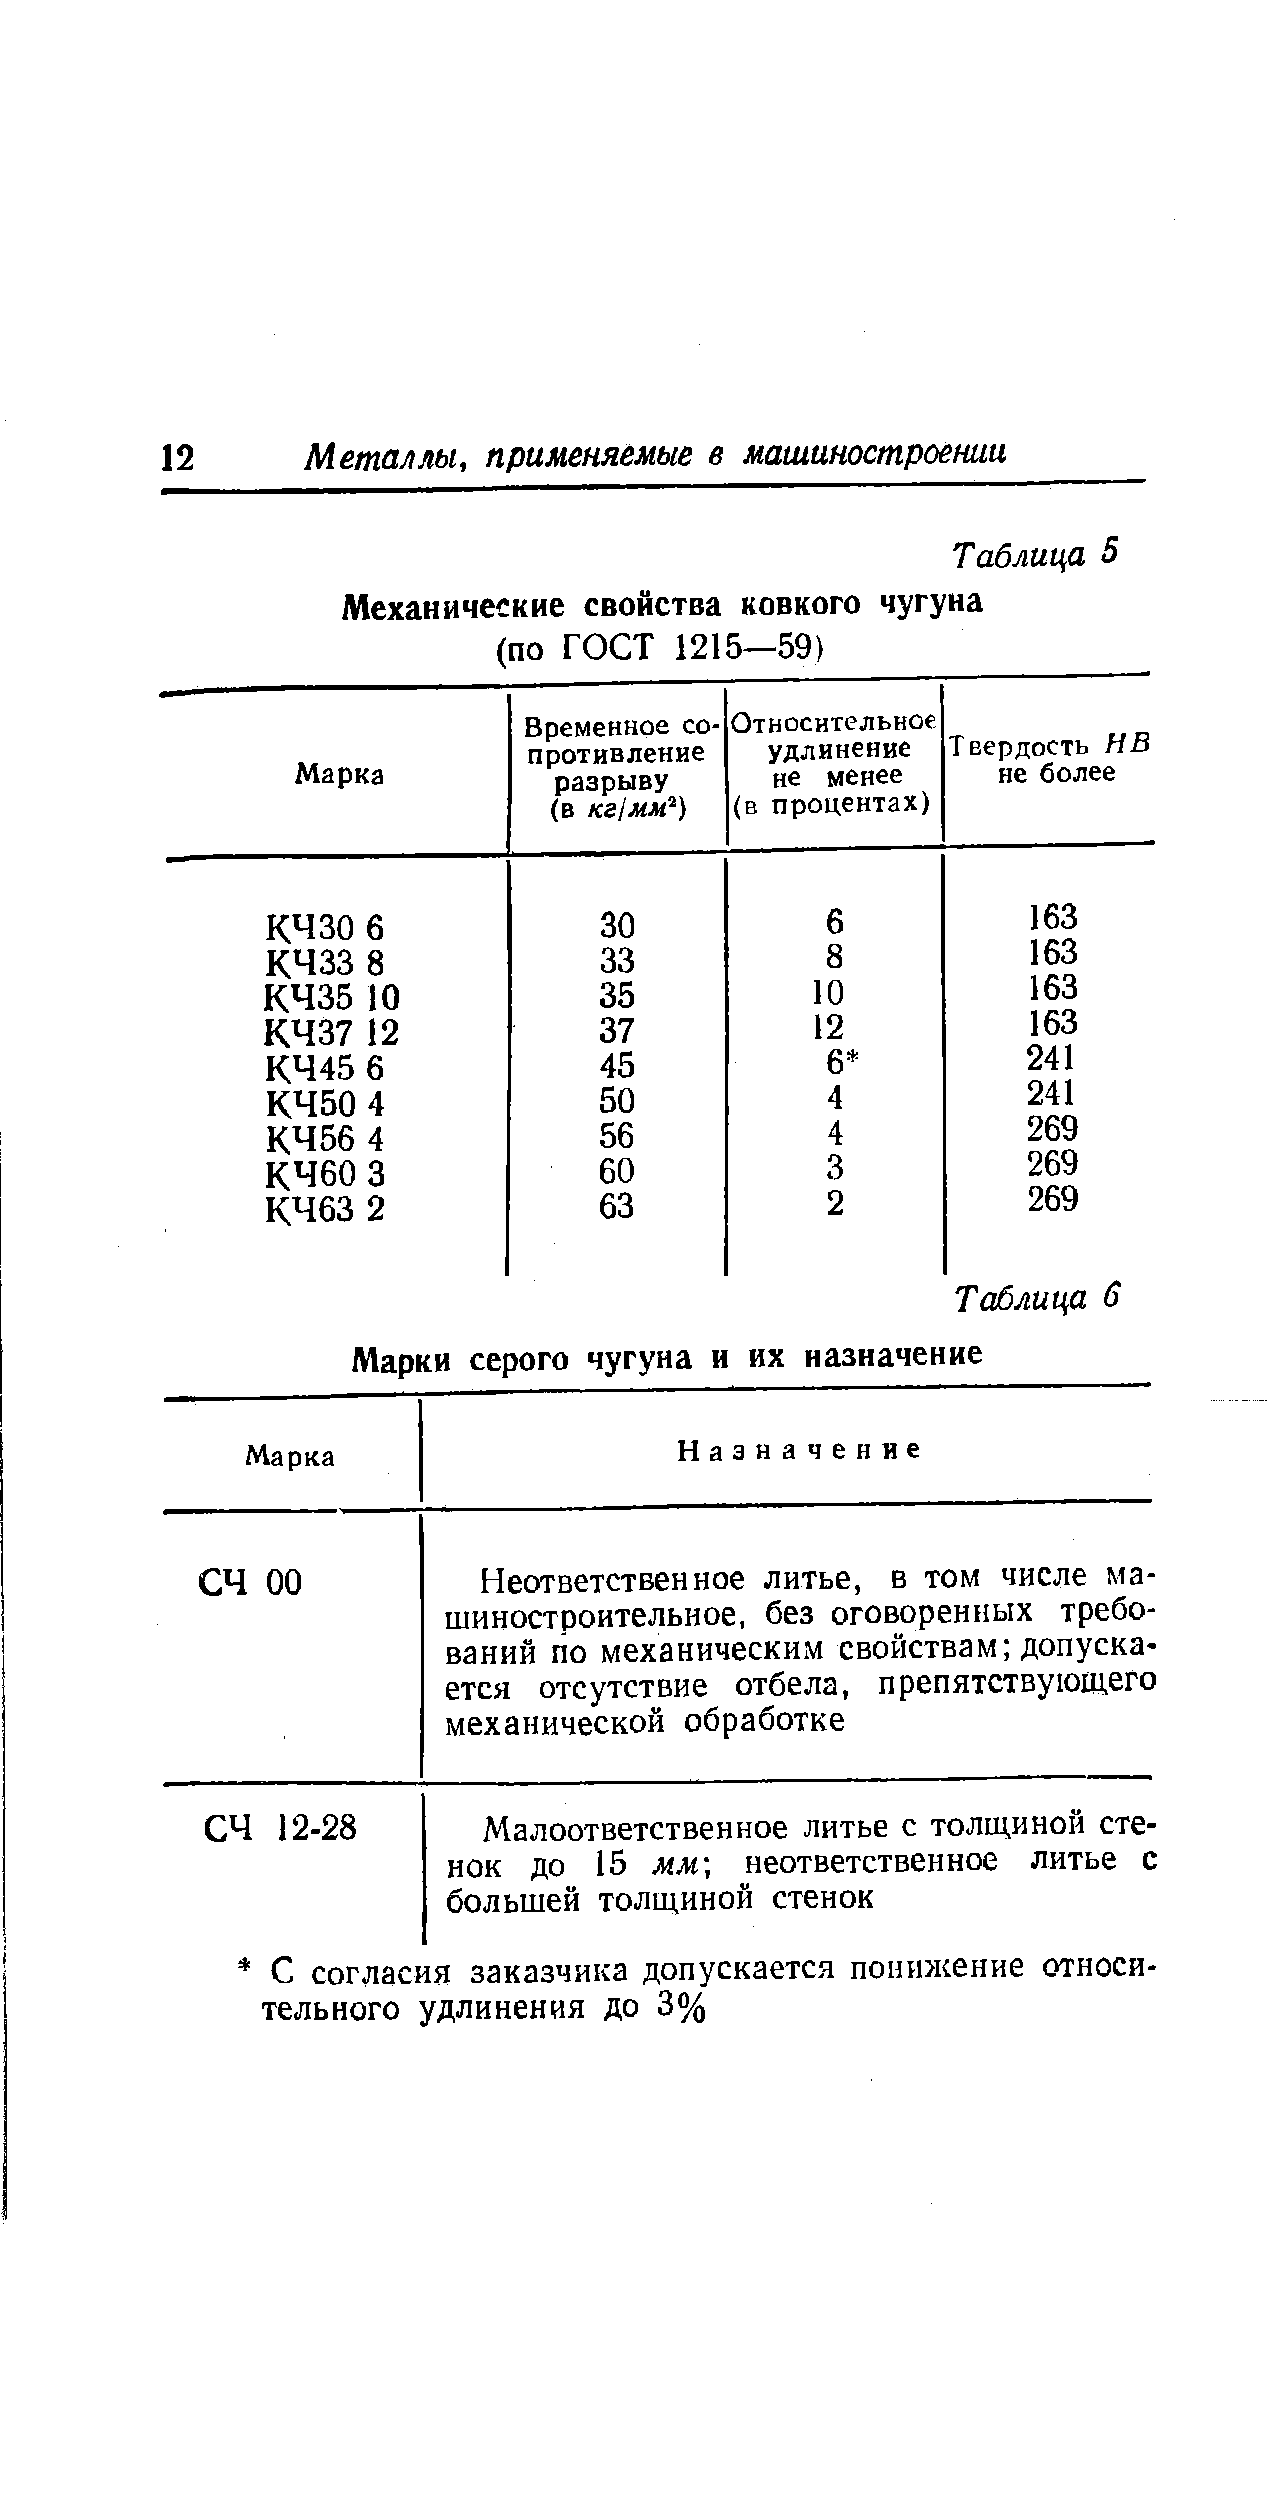 Таблица 5 Механические свойства ковкого чугуна (по гост 1215—59)
